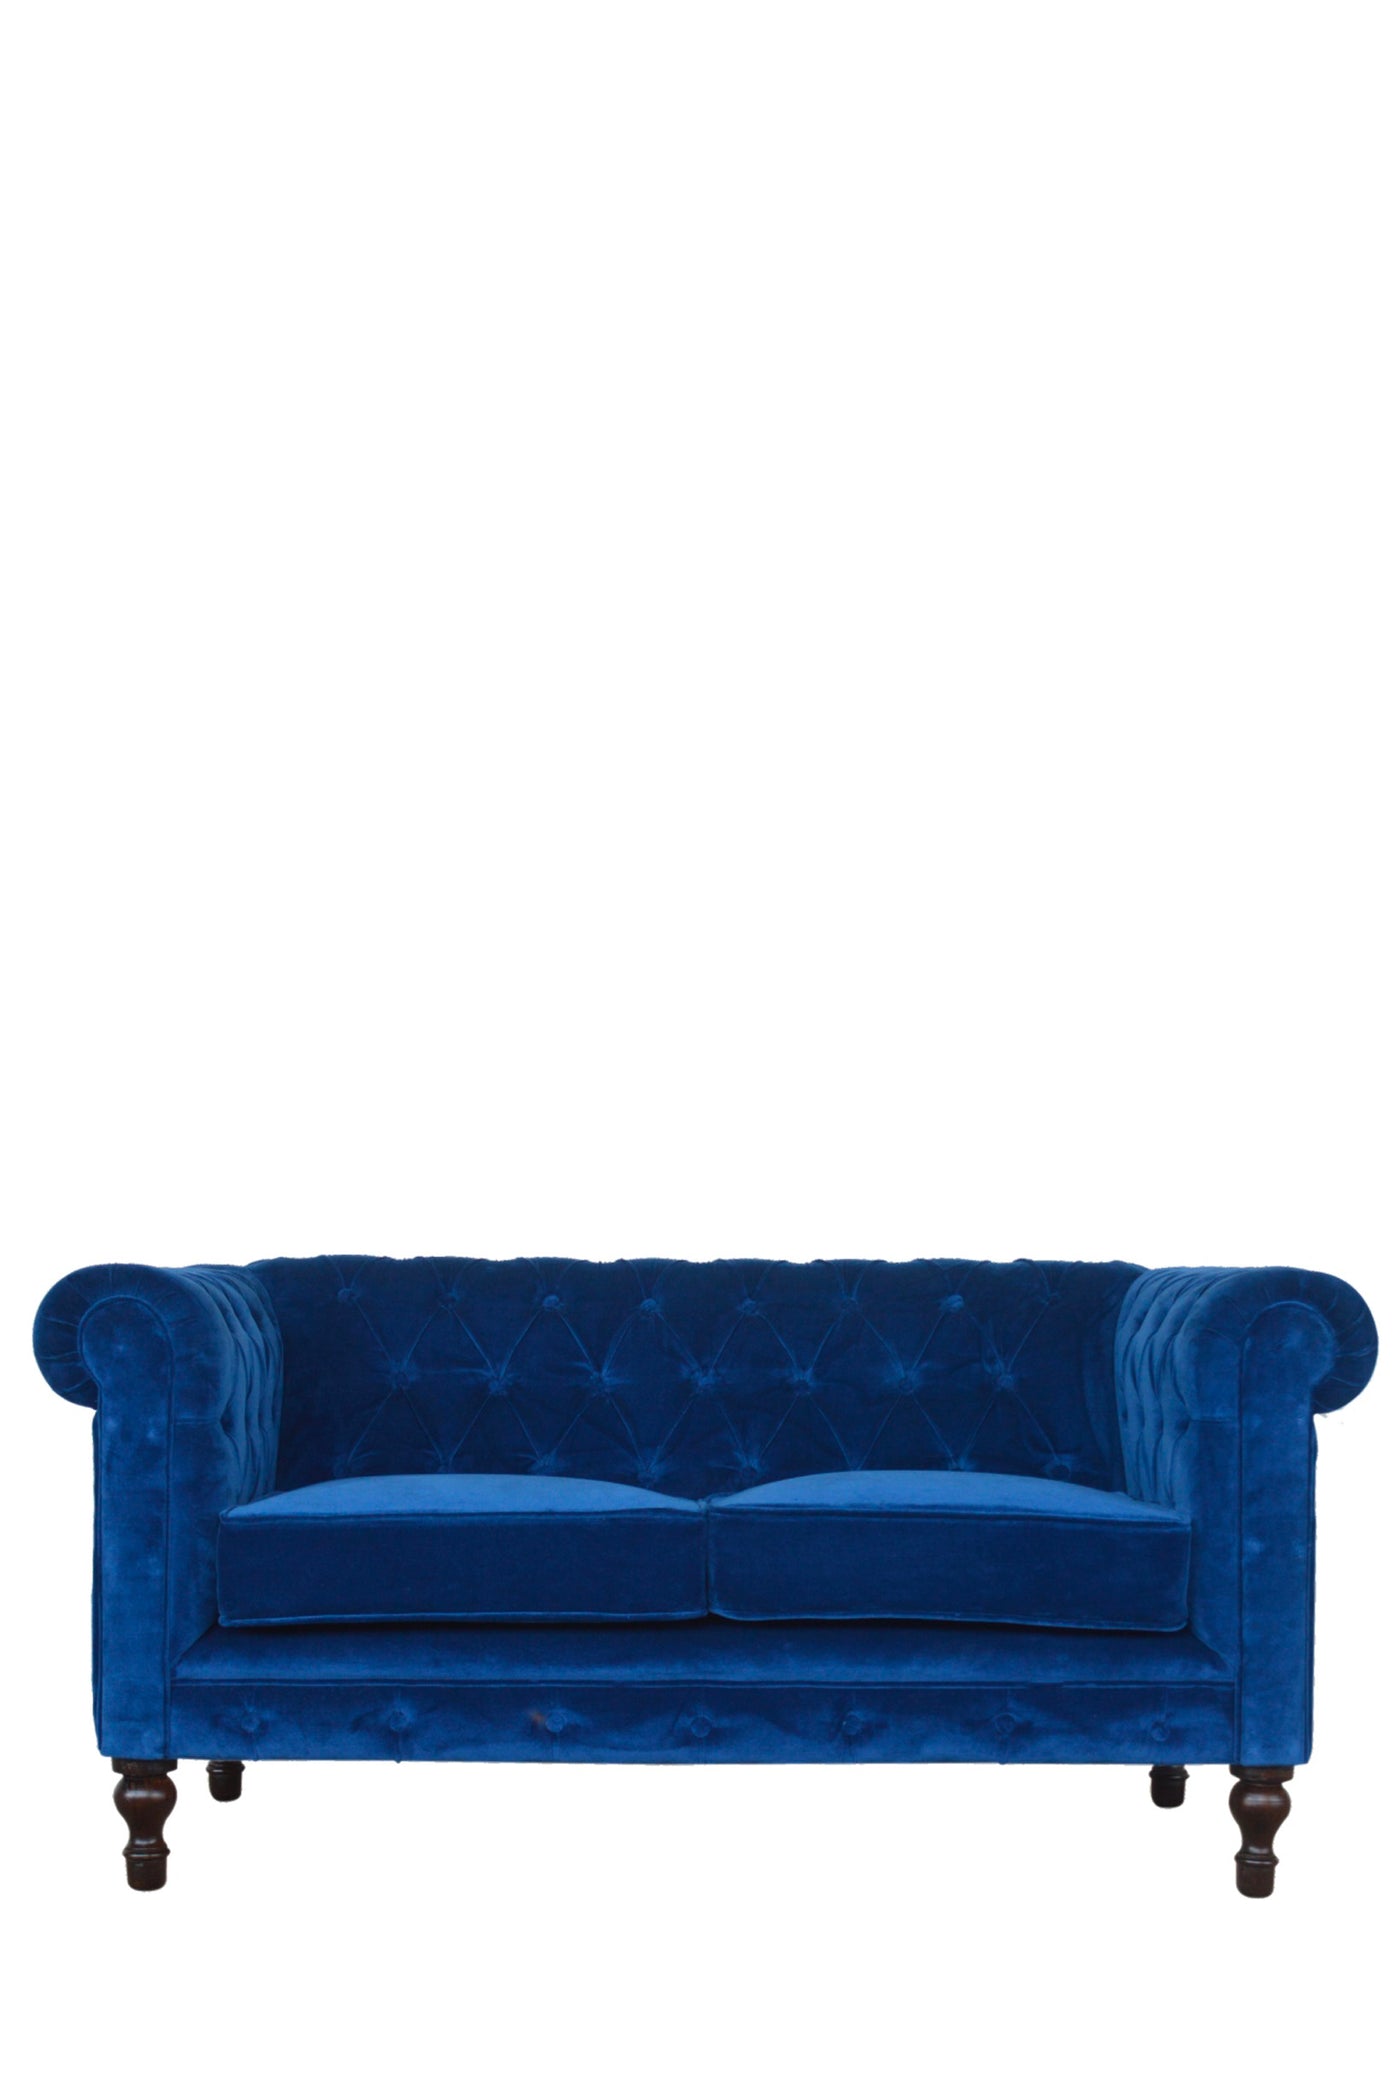 Pimlico - Sofa Royal Blue 2 Seater